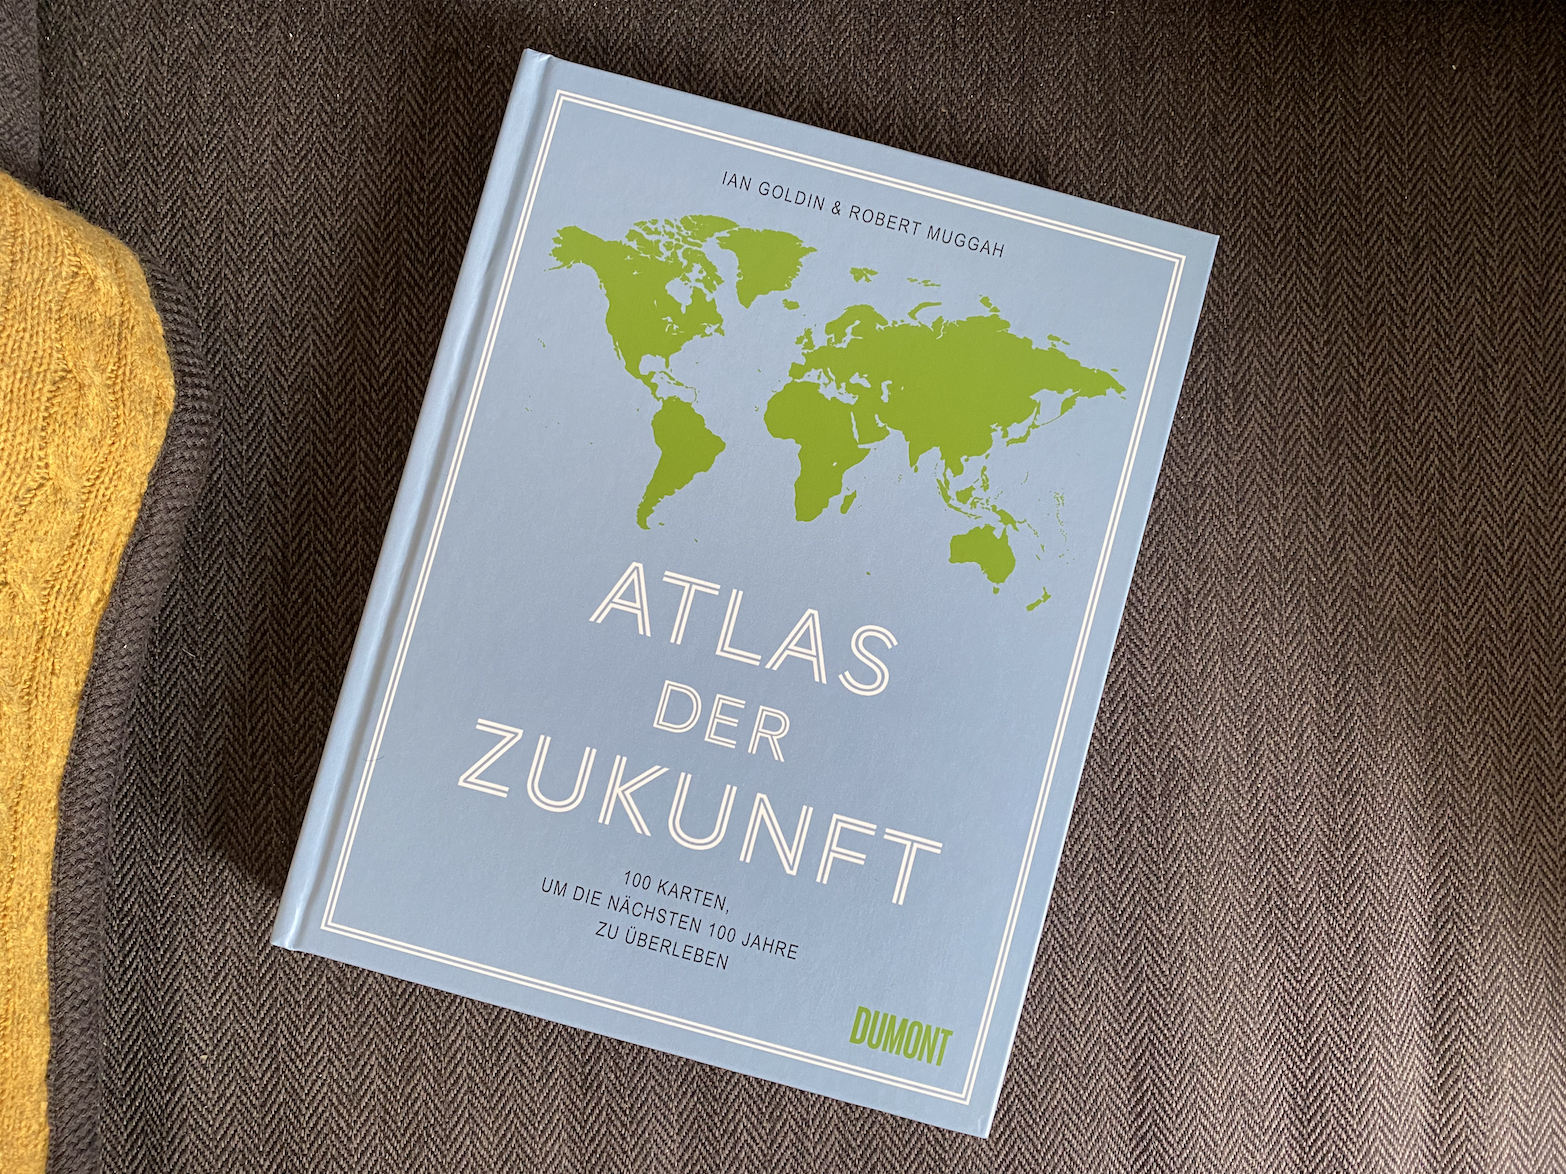 ATLAS DER ZUKUNFT – Ian Goldin & Robert Muggah